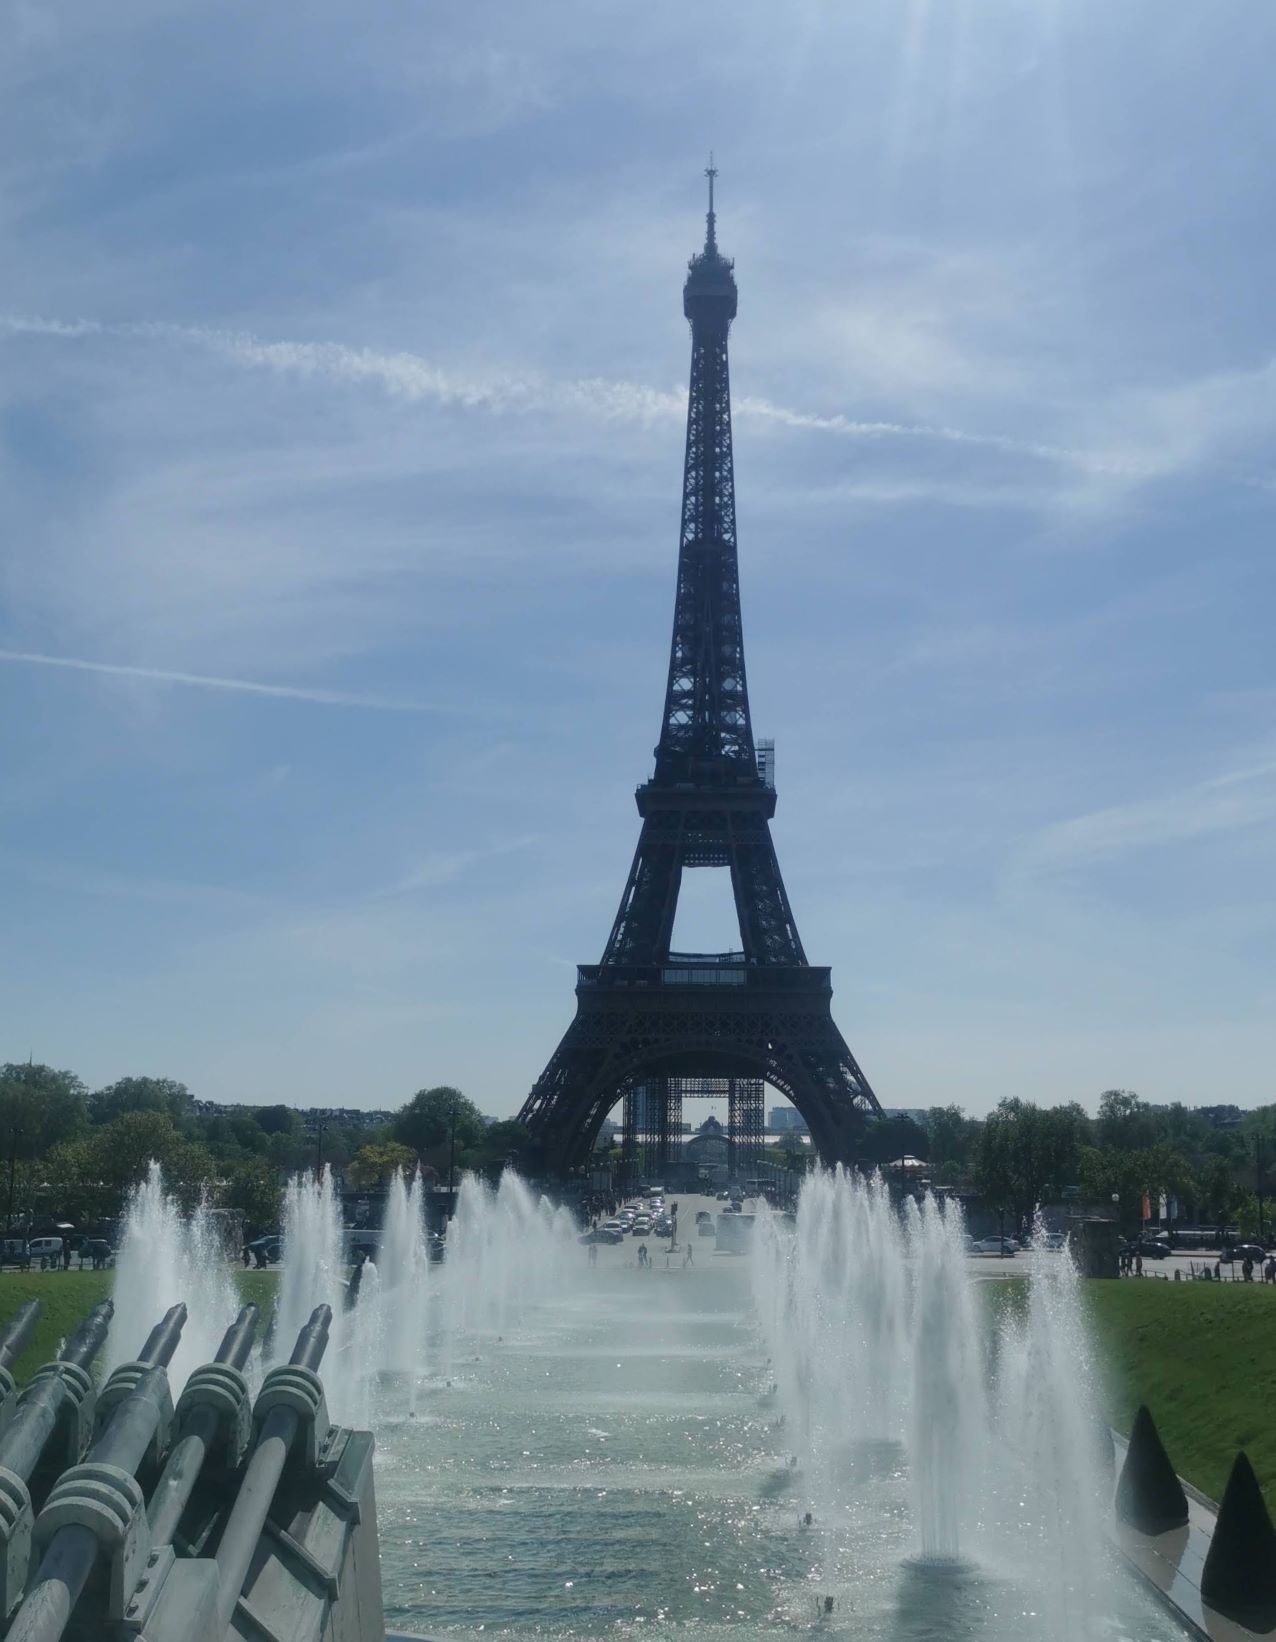  A szökőkút és a torony másik szögből. Először azt hittük, hogy a kép előterében azok ágyúk, amivel lőni lehet az Eiffel-tornyot, ha valaki el akarná foglalni, de kiderült, hogy az is a szökőkút része.